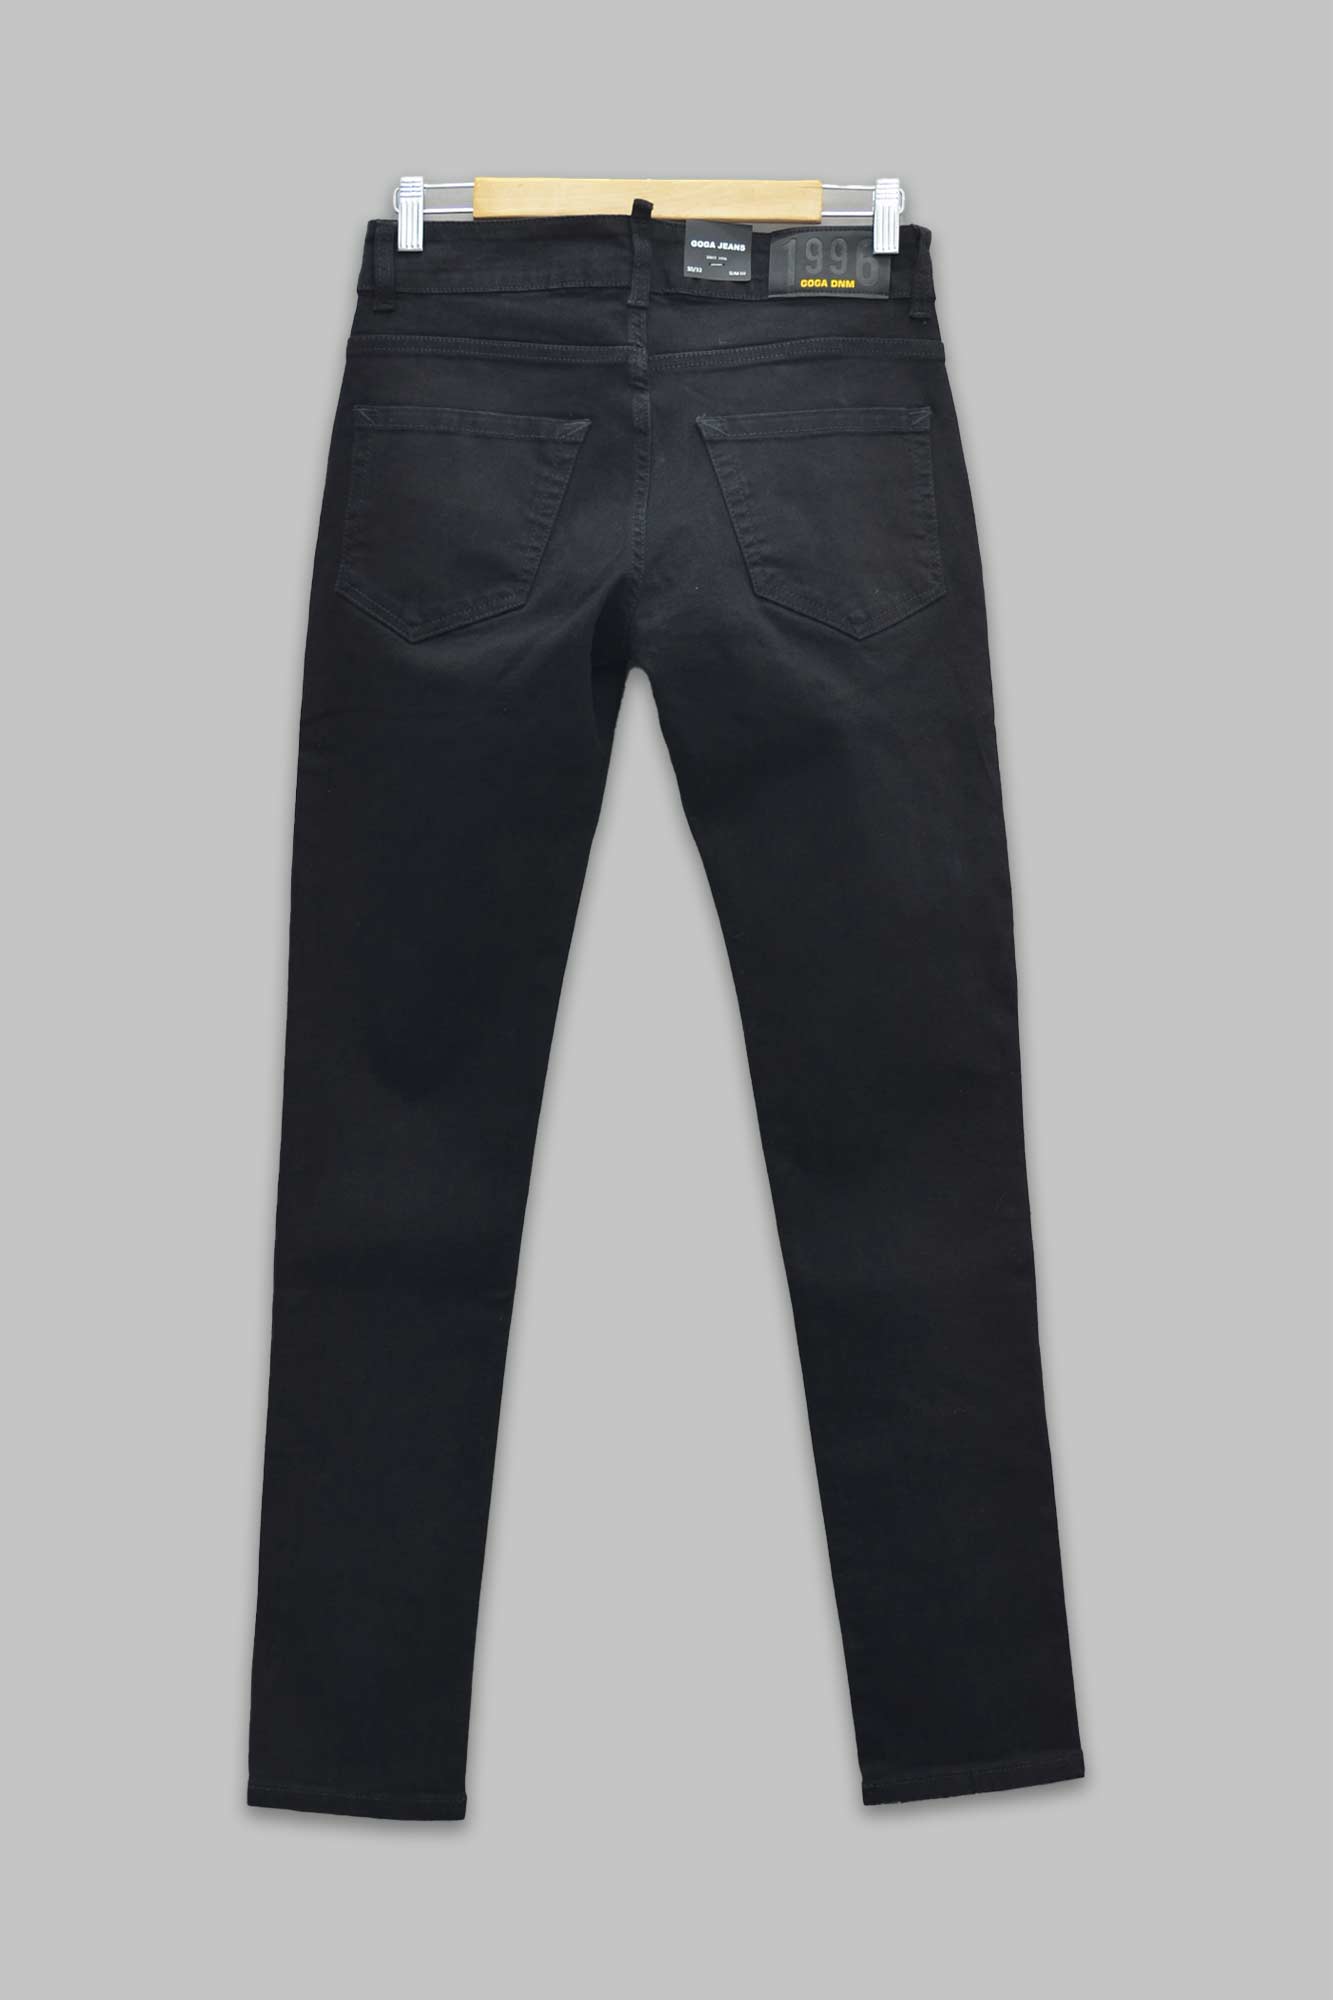 Pantalón de mezclilla negro slim fit para hombre